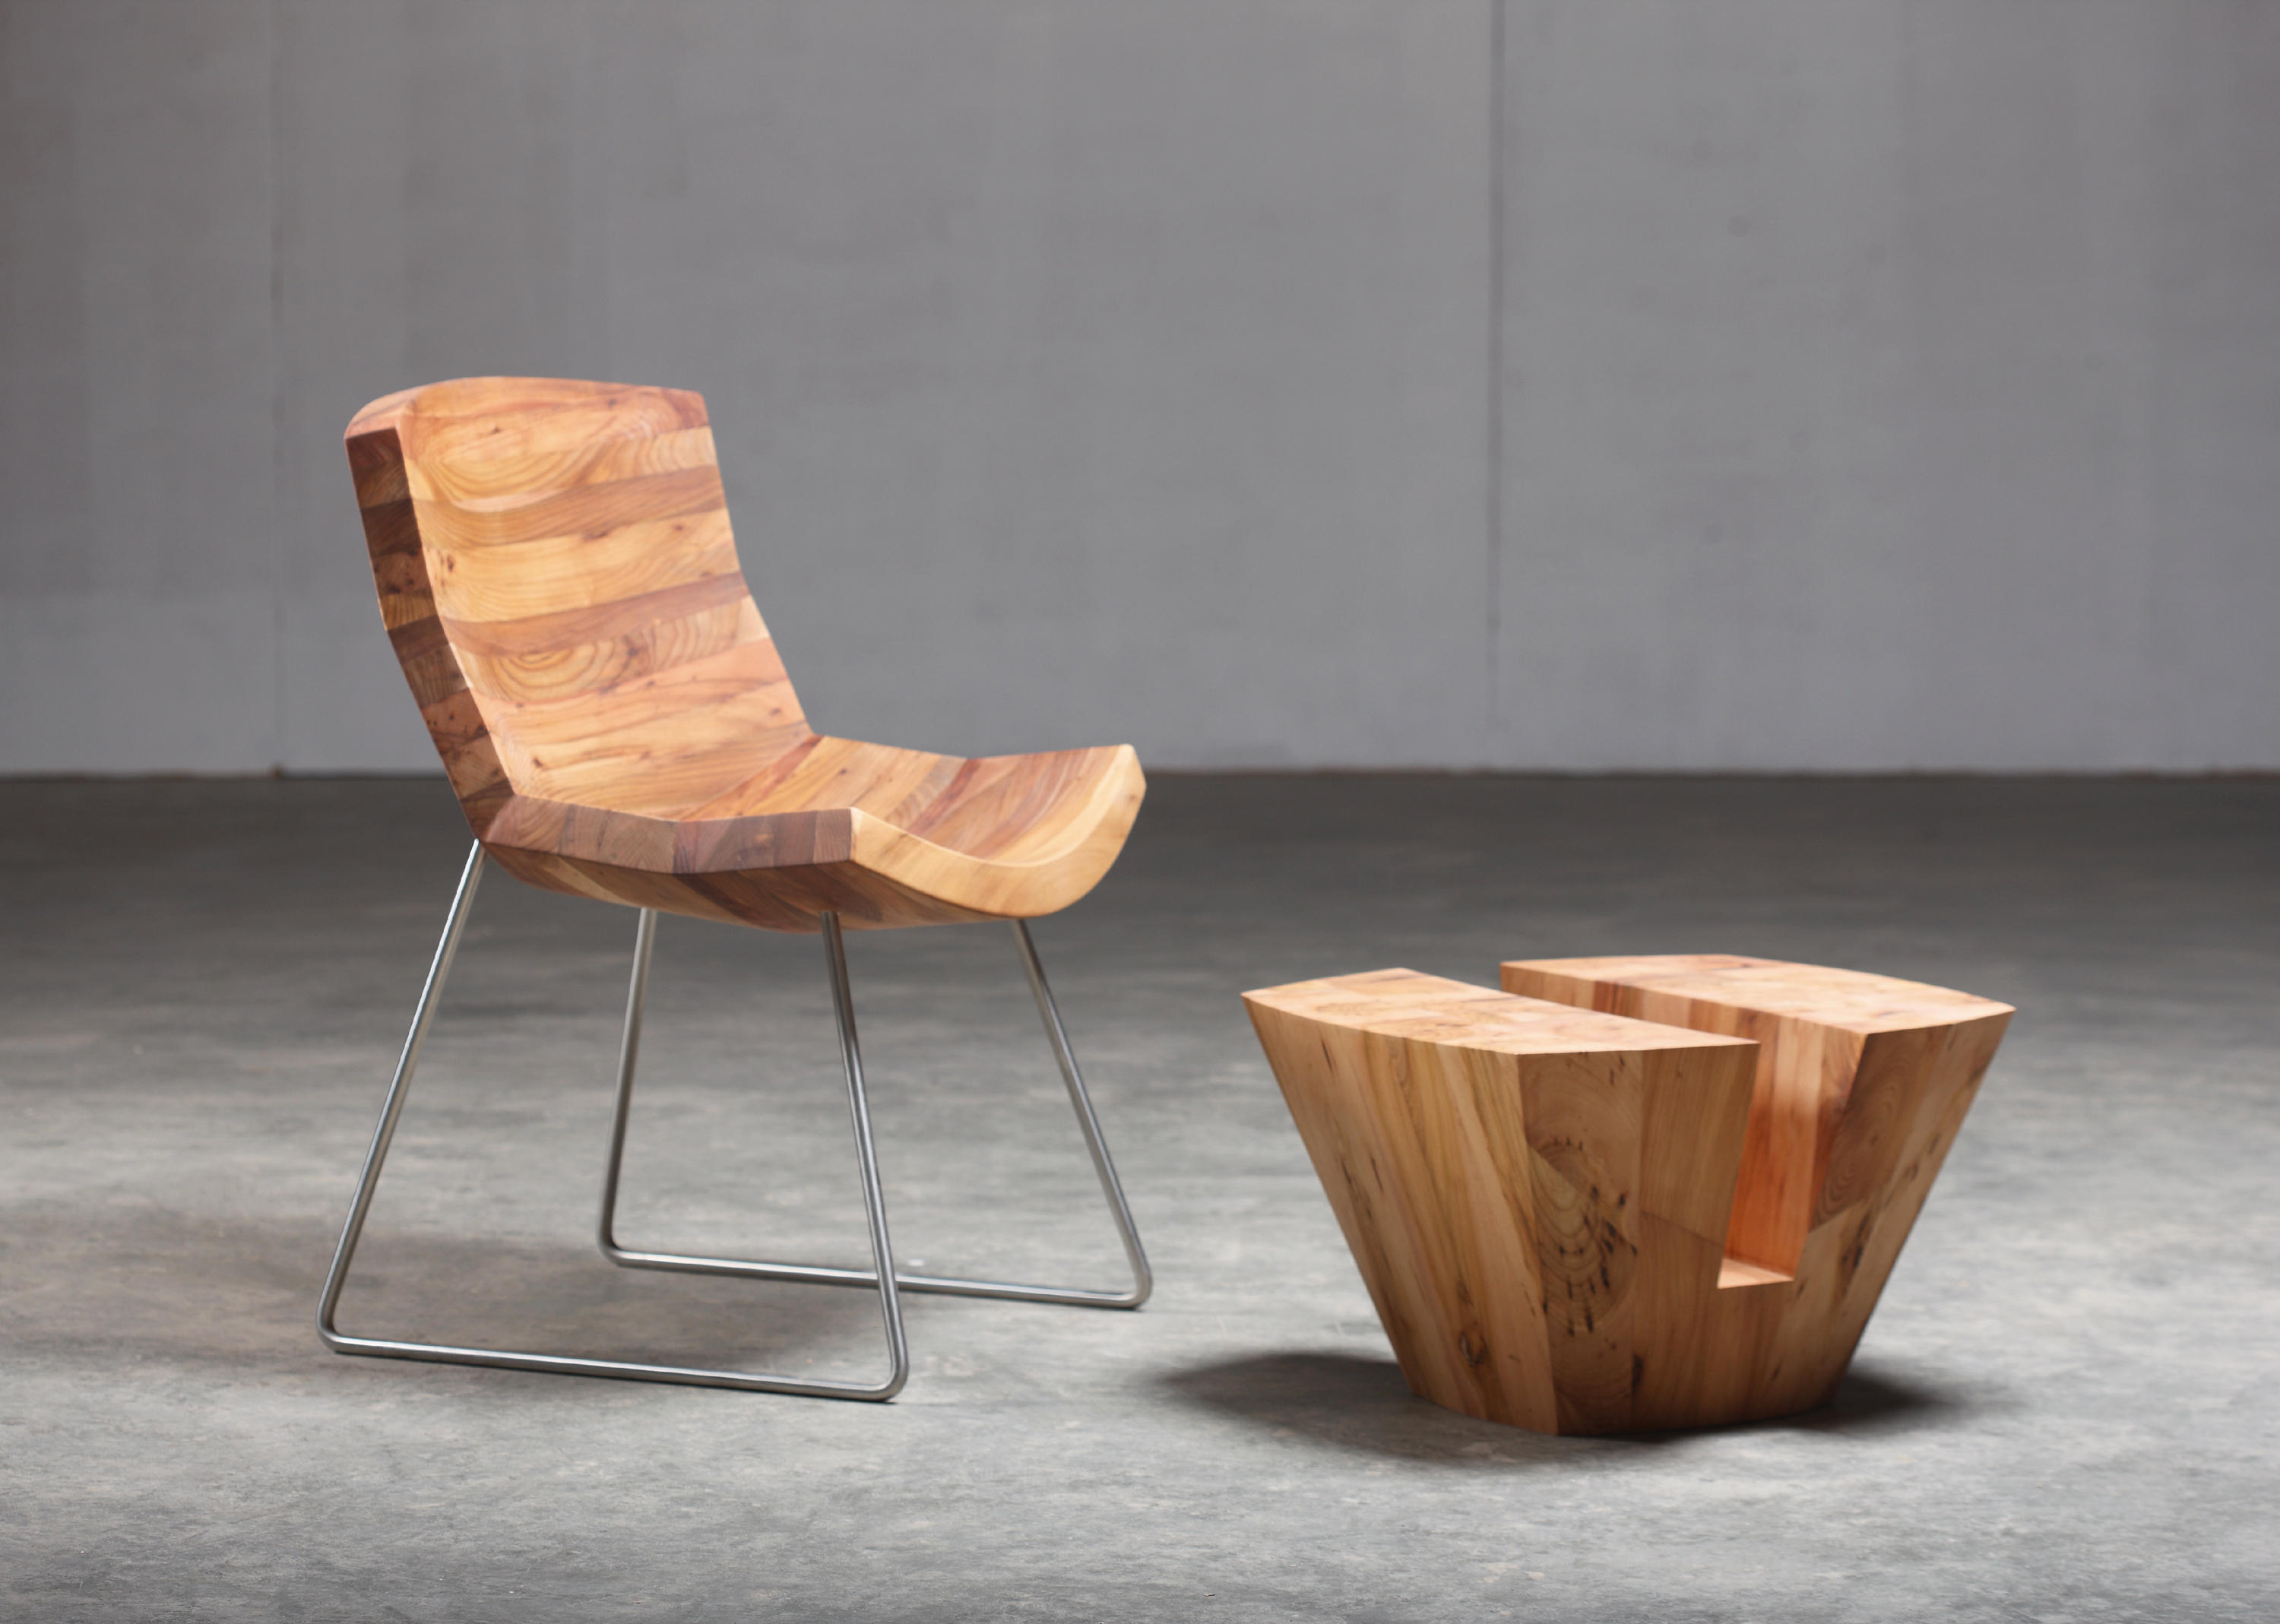 Wooden chair. Современная мебель из дерева. Мебель из премиального дерева. Table Chair мебель. Кресло из ламината.